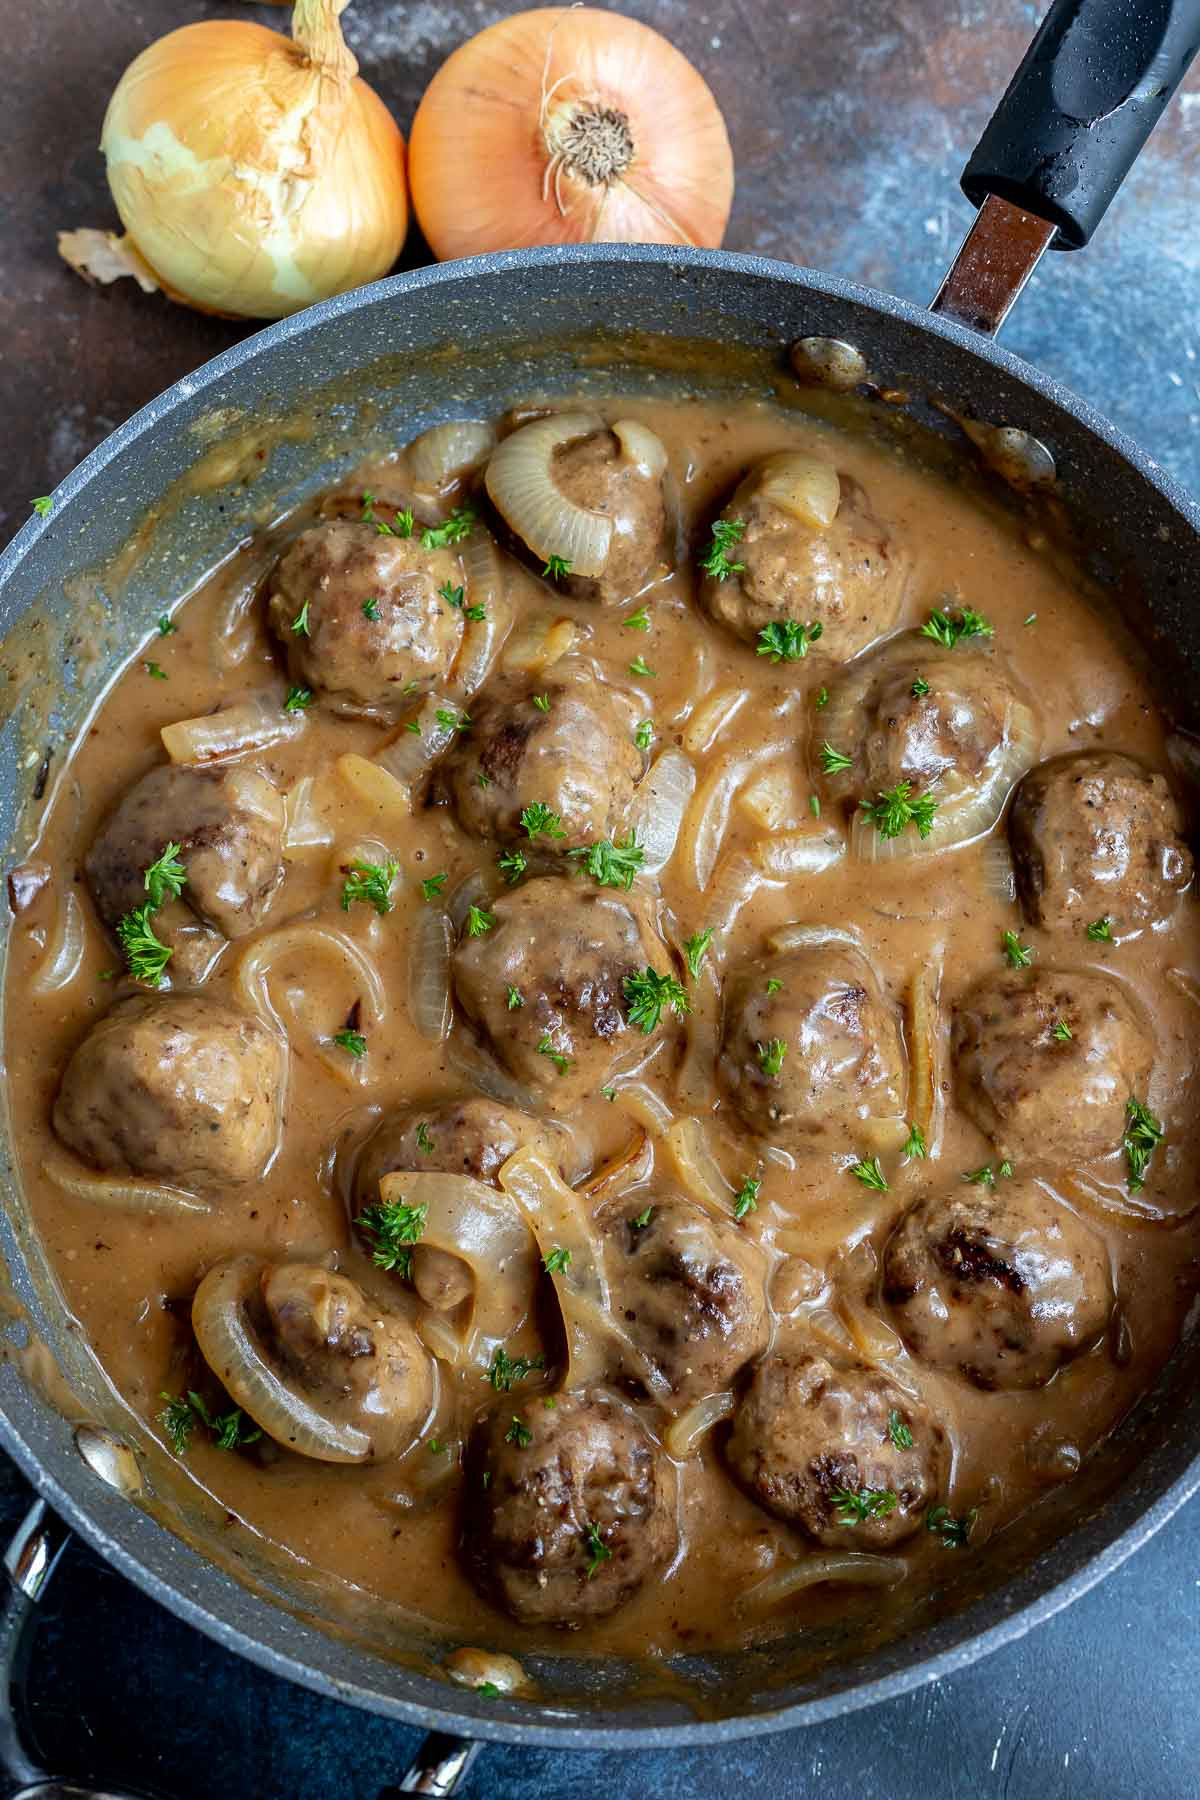 15 Amazing Meatballs Rice and Gravy